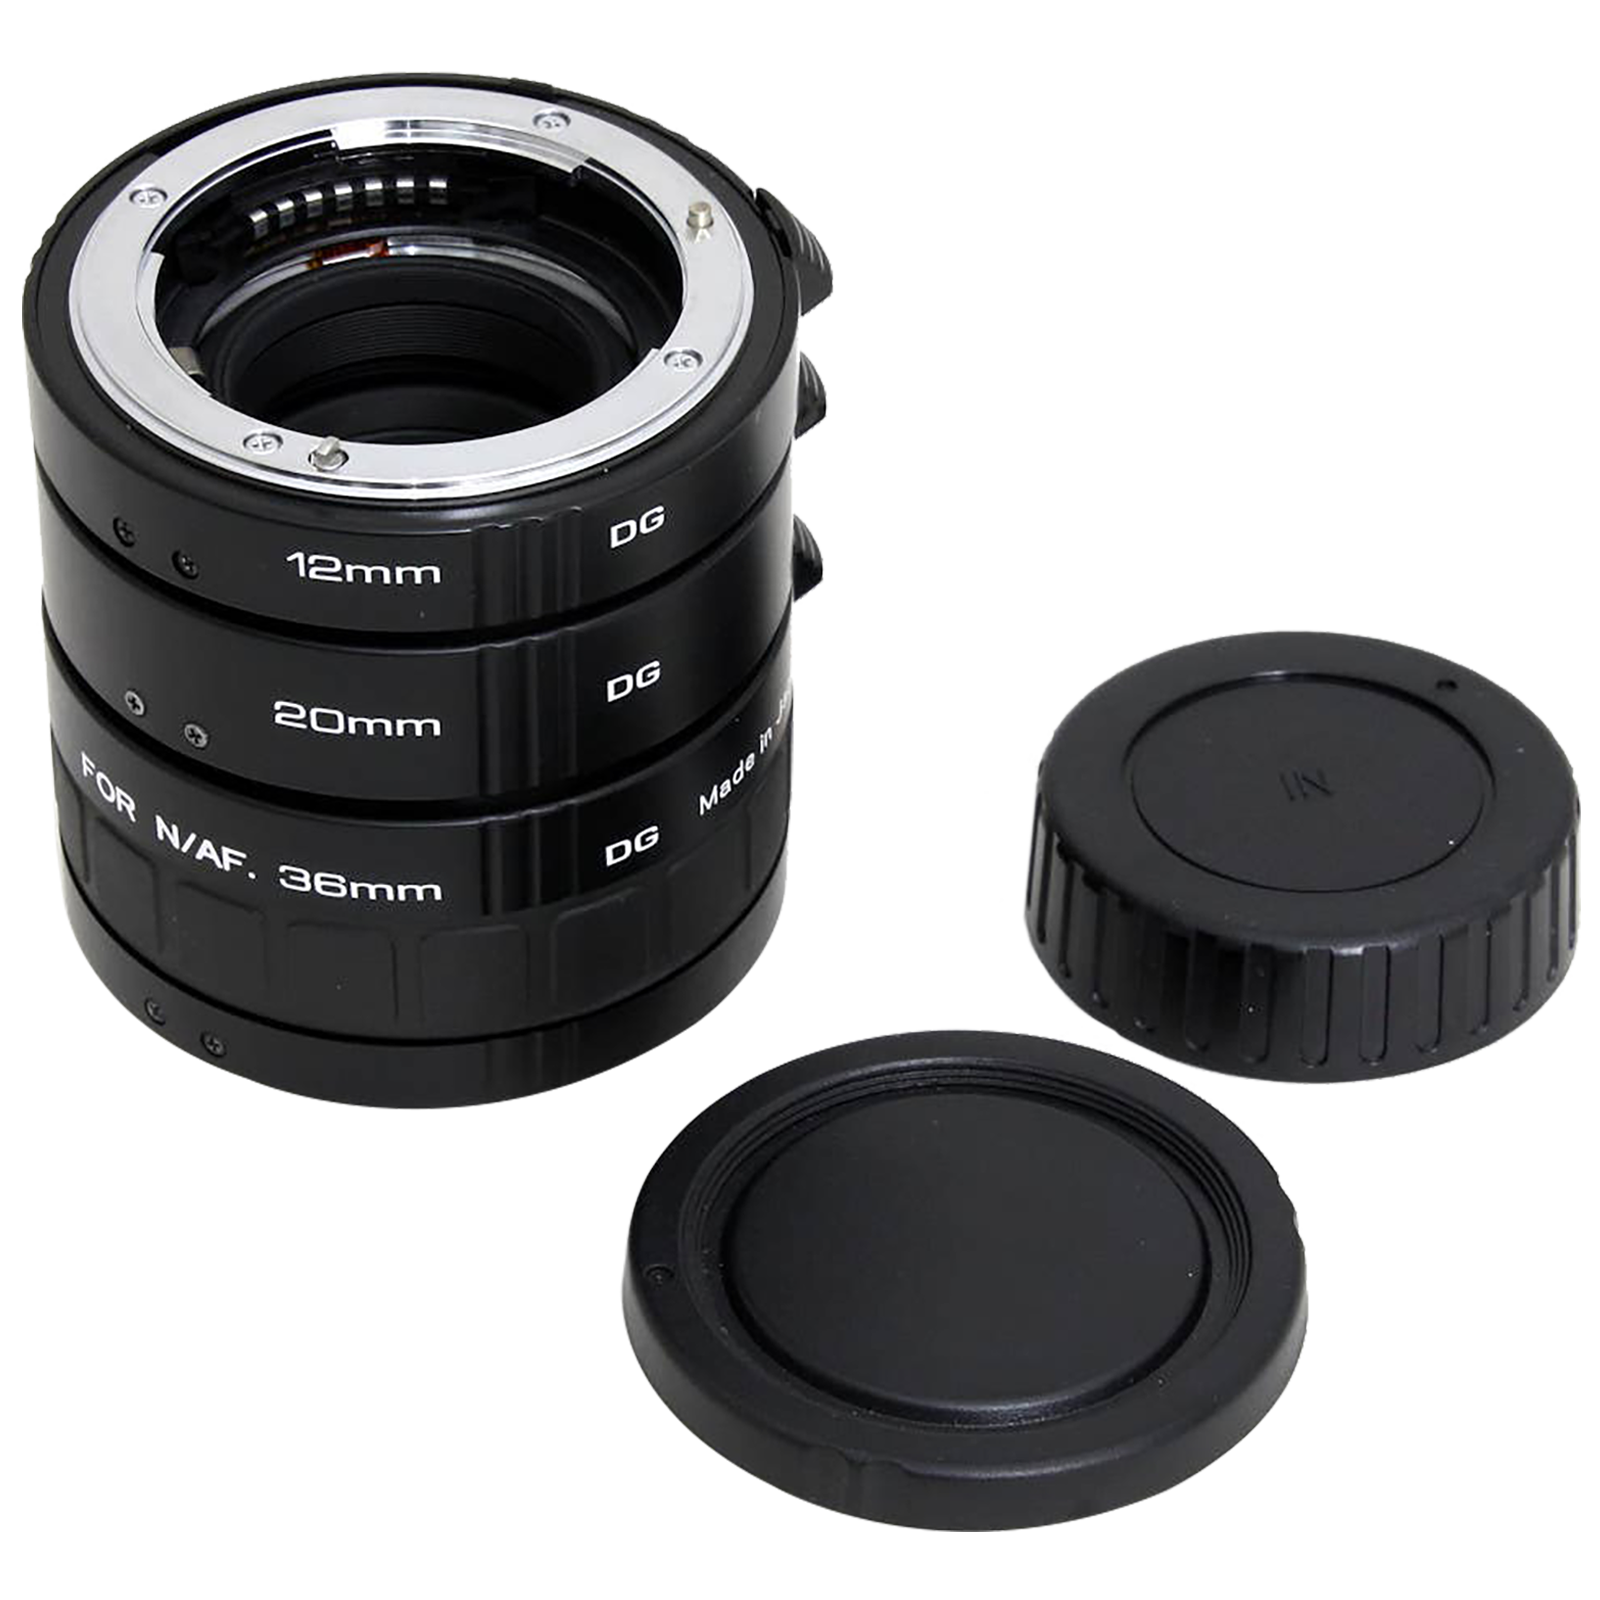 Kenko AF Extension Tube For Nikon DSLR (Enables Closer Focusing Capability, 89997, Black)_1